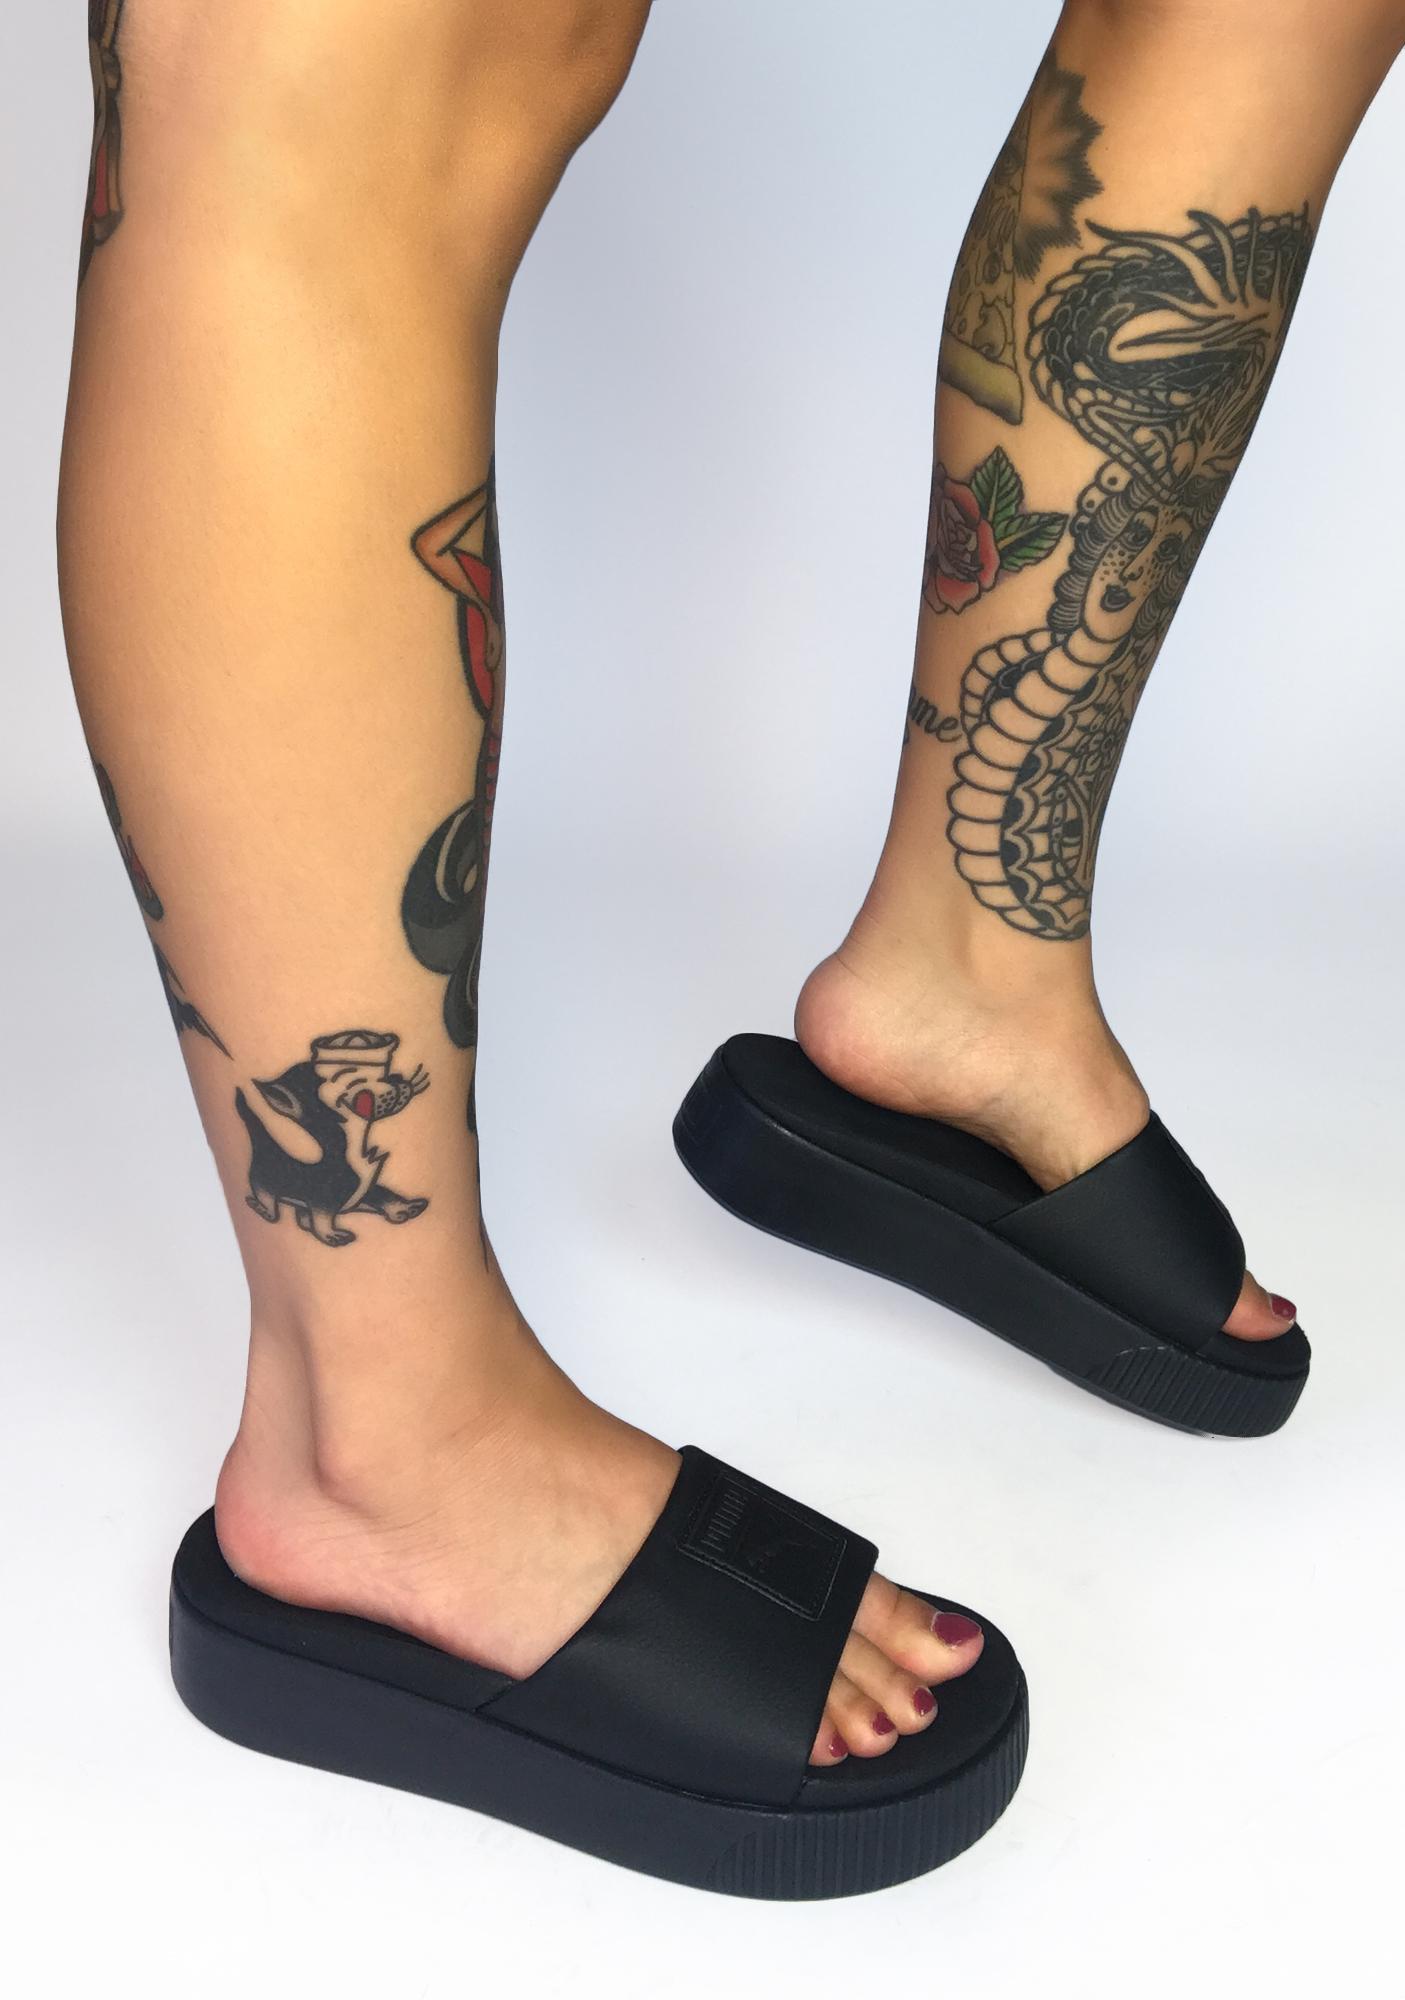 puma platform sandals black